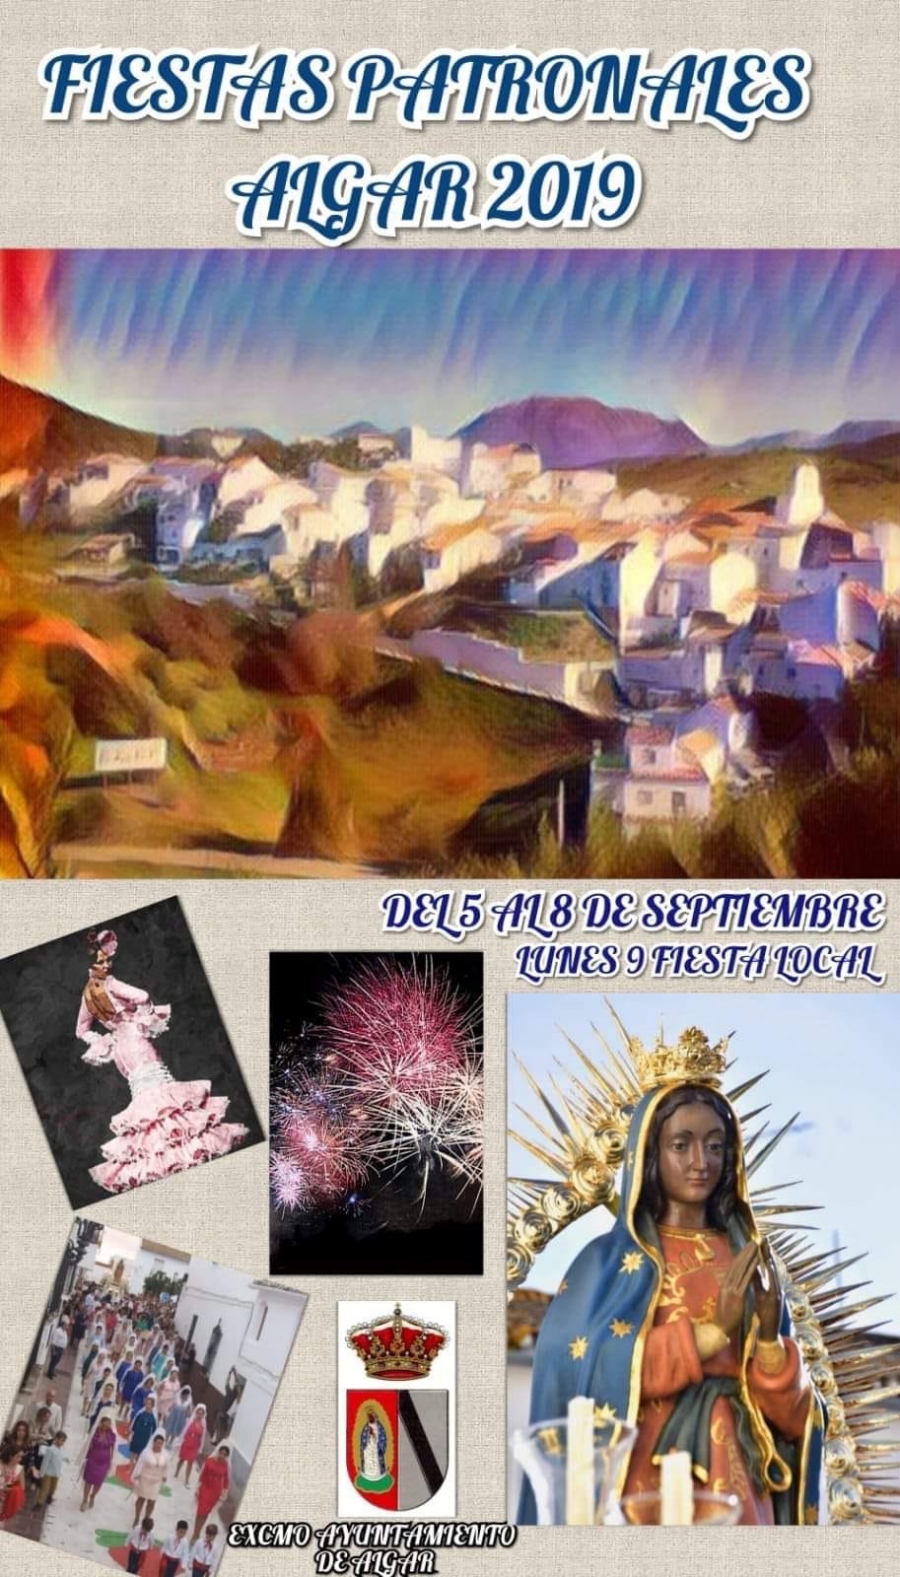 Fiestas Patronales Algar 2019